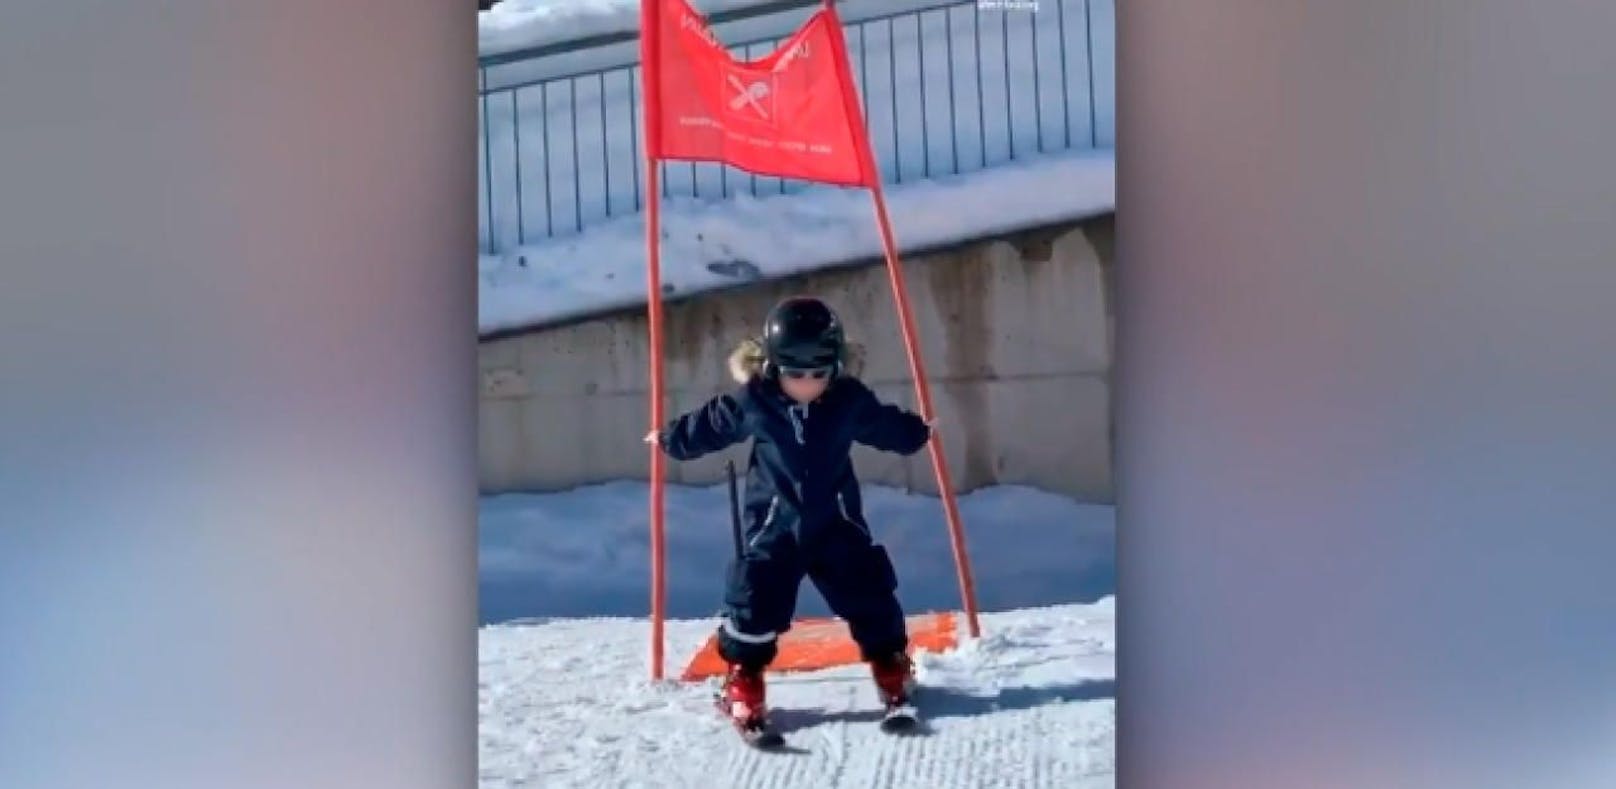 Alessio Lombardi lernt Skifahren in Österreich